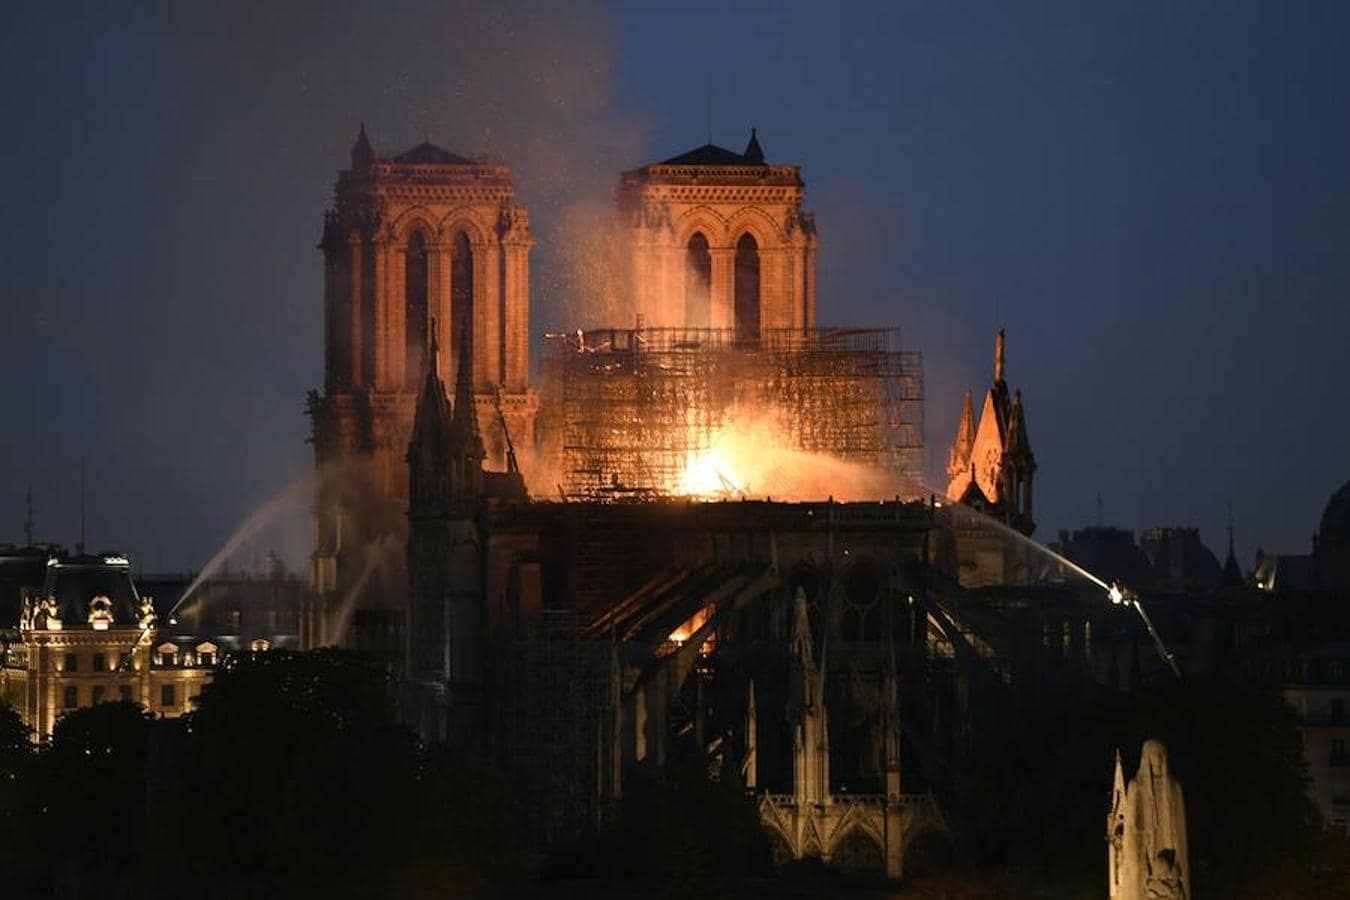 El devastador incendio que consume la catedral de Notre Dame de París, en imágenes